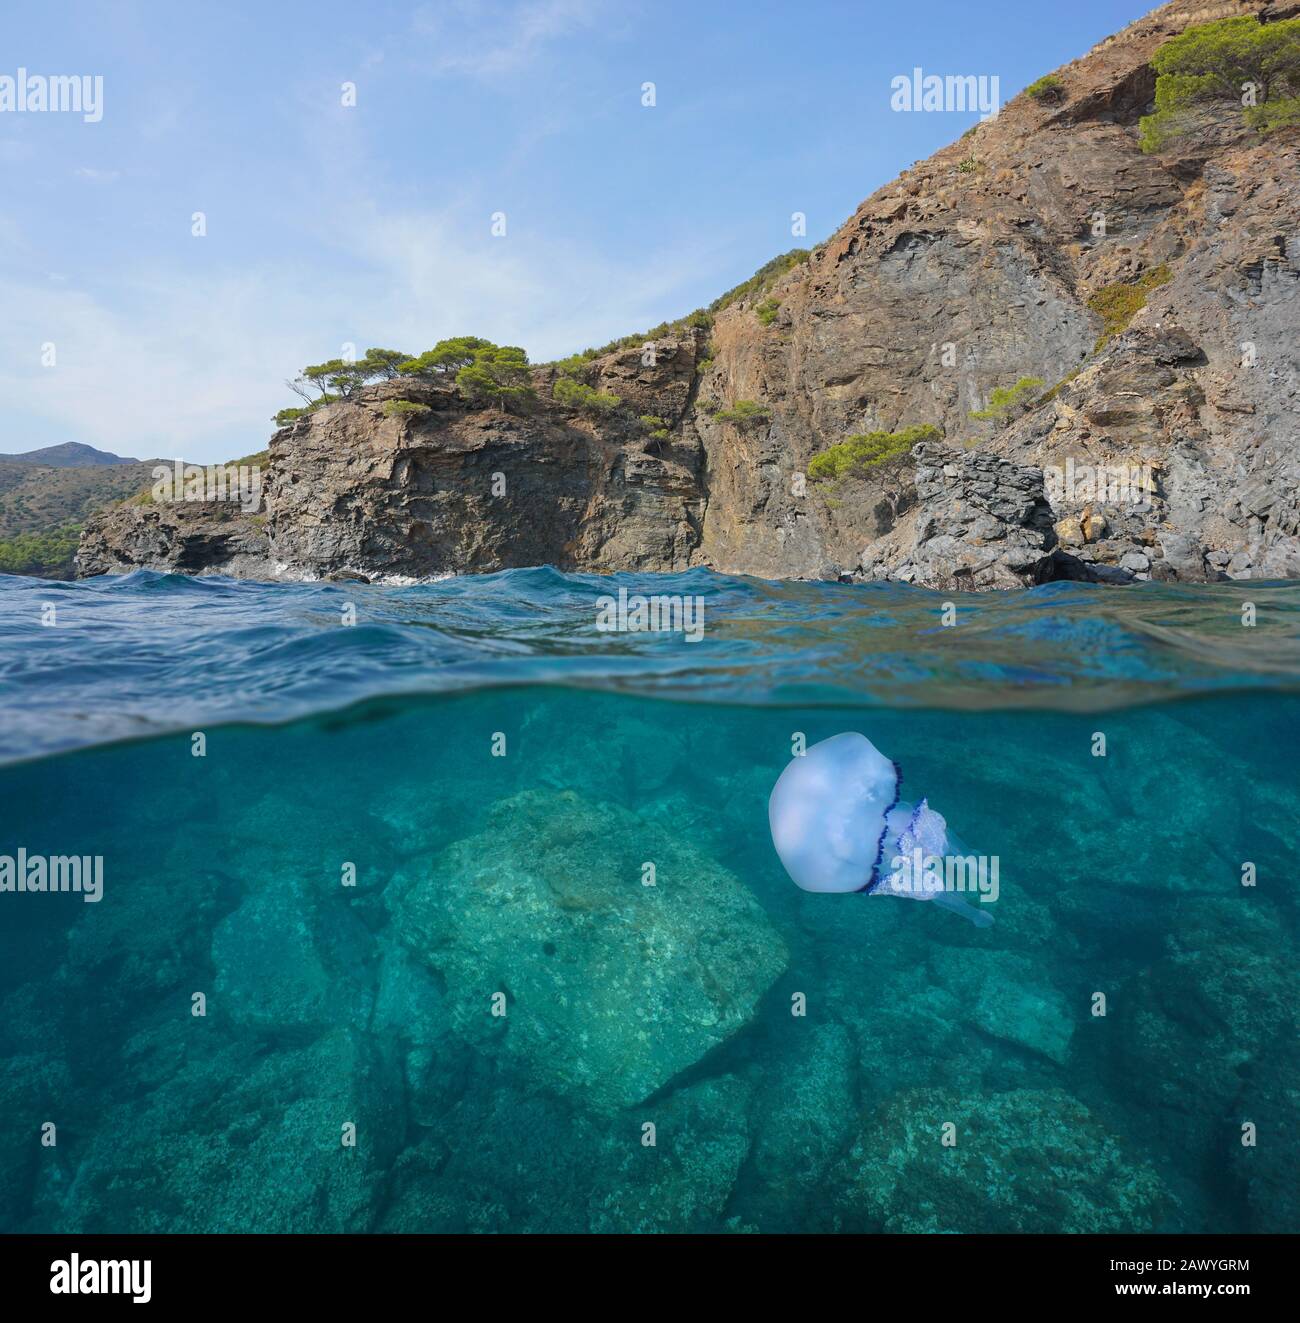 Costa rocciosa con una canna di medusa sott'acqua, vista divisa sulla superficie dell'acqua, Mar Mediterraneo, Spagna, Costa Brava, Catalogna, Cap de Creus Foto Stock